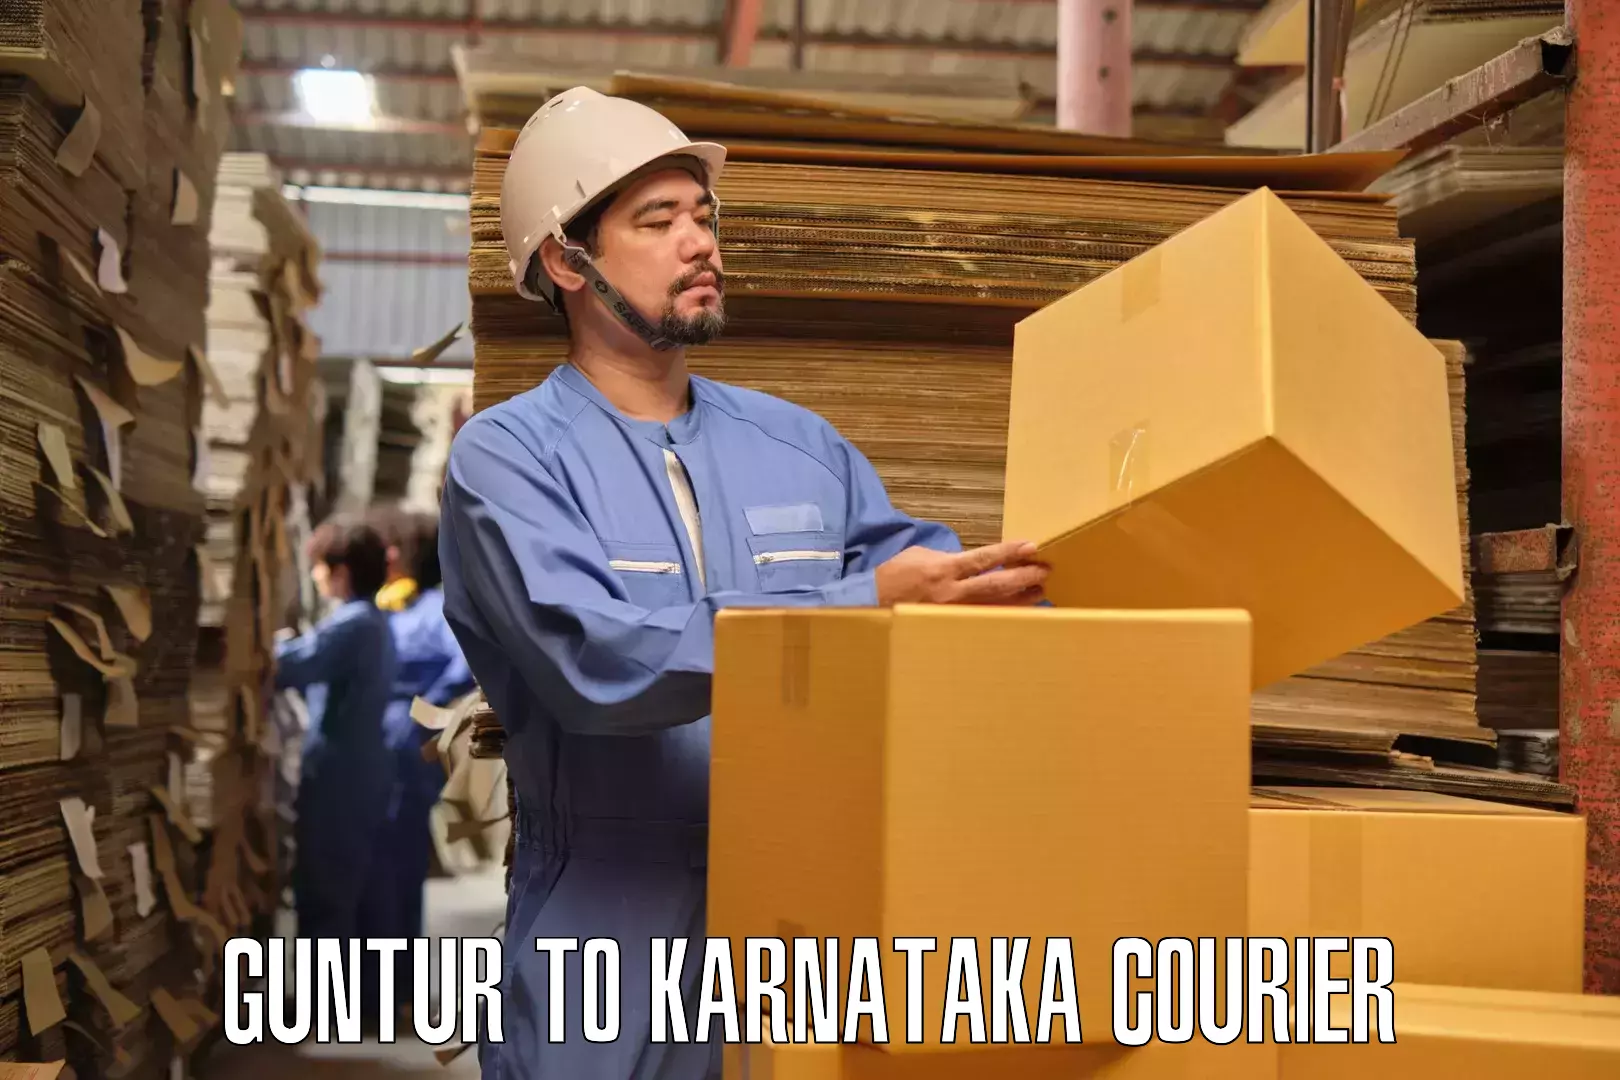 Furniture delivery service Guntur to Chikkanayakanahalli